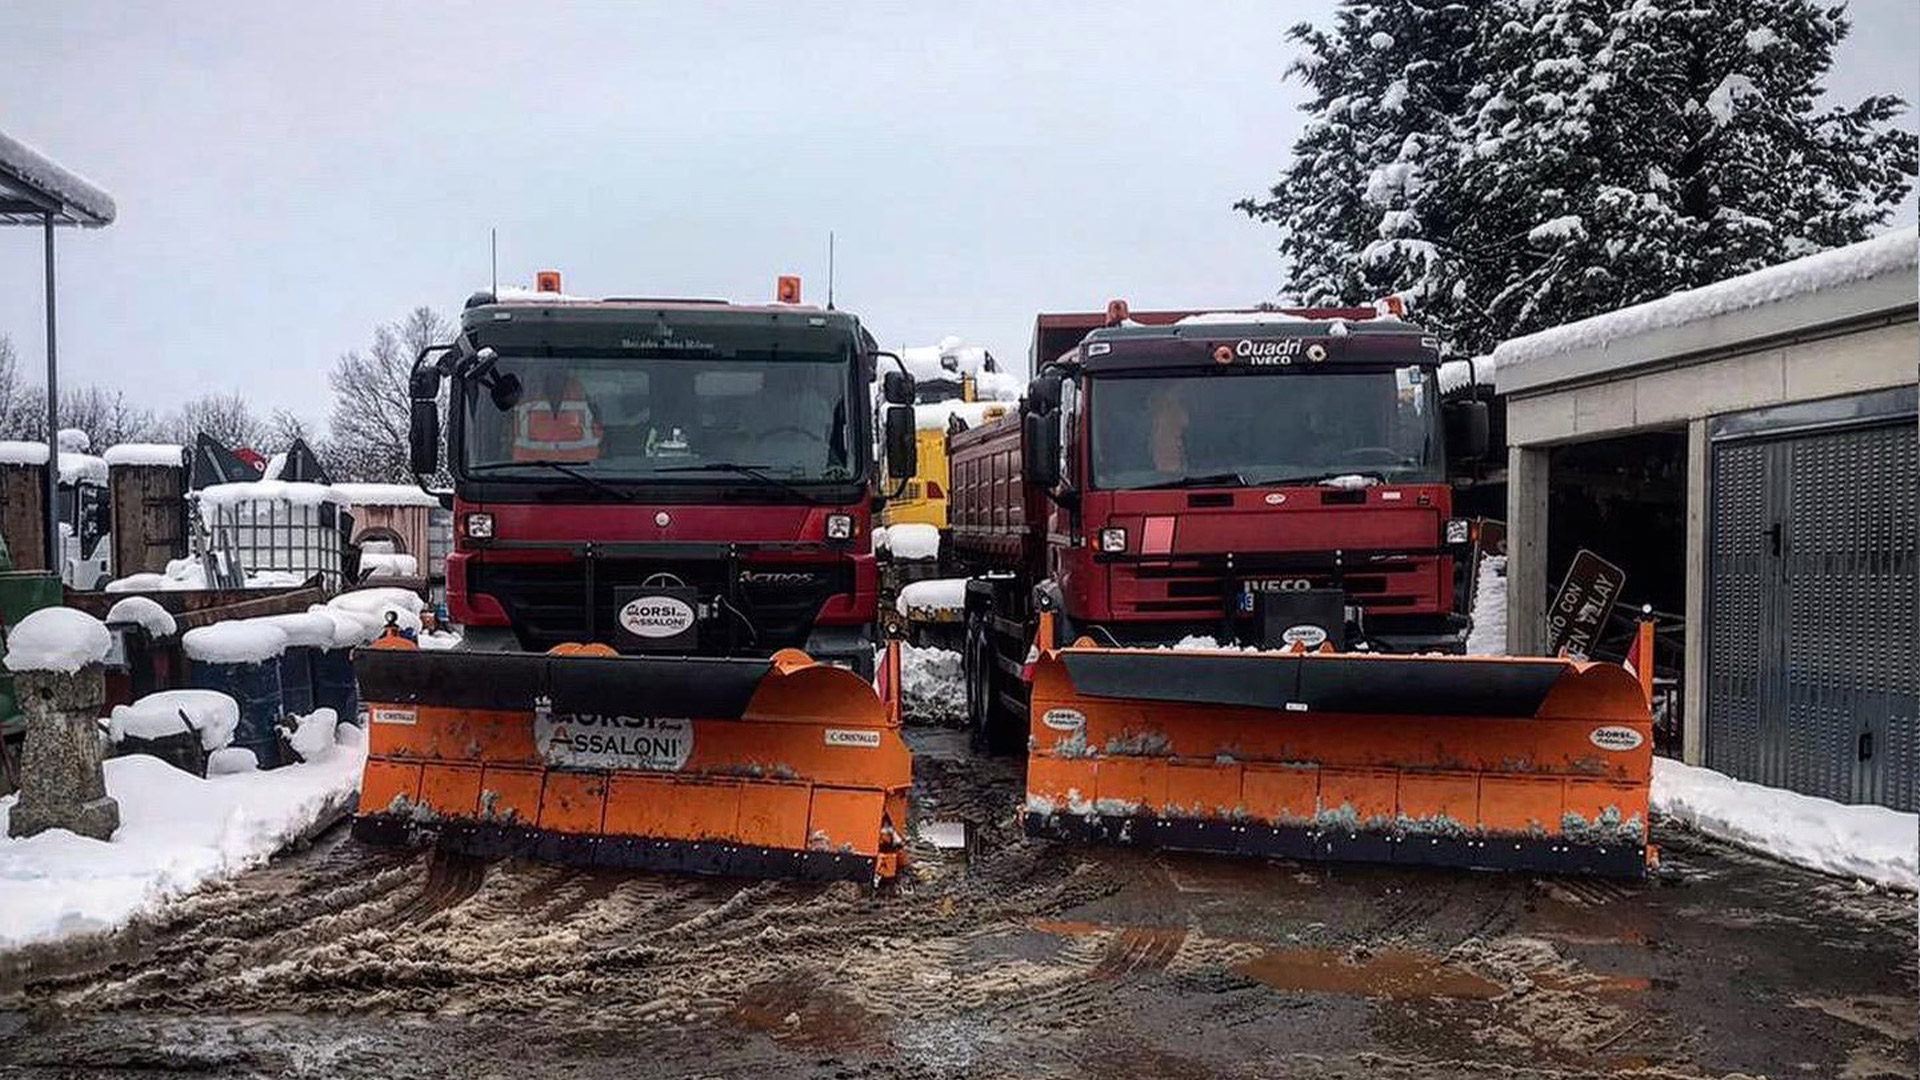 L'Impresa Ronzoni srl si occupa di manutenzione stradale, compresi i servizi di sgombro, spazza neve e spargi sale.